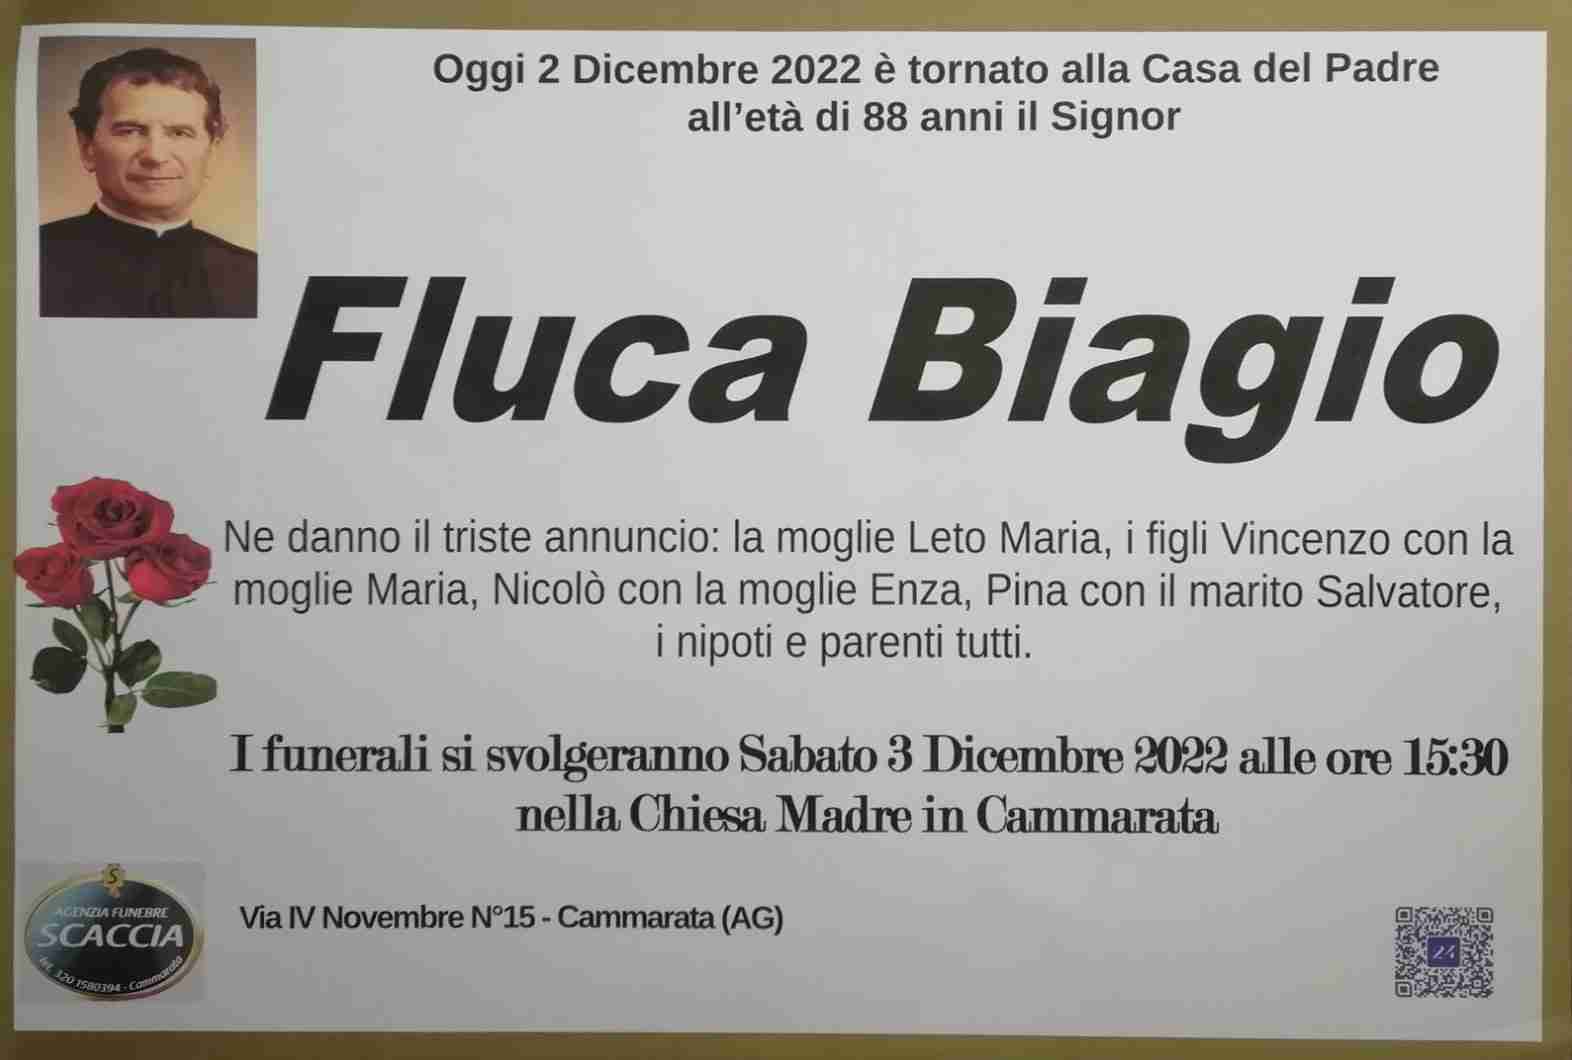 Biagio Fluca